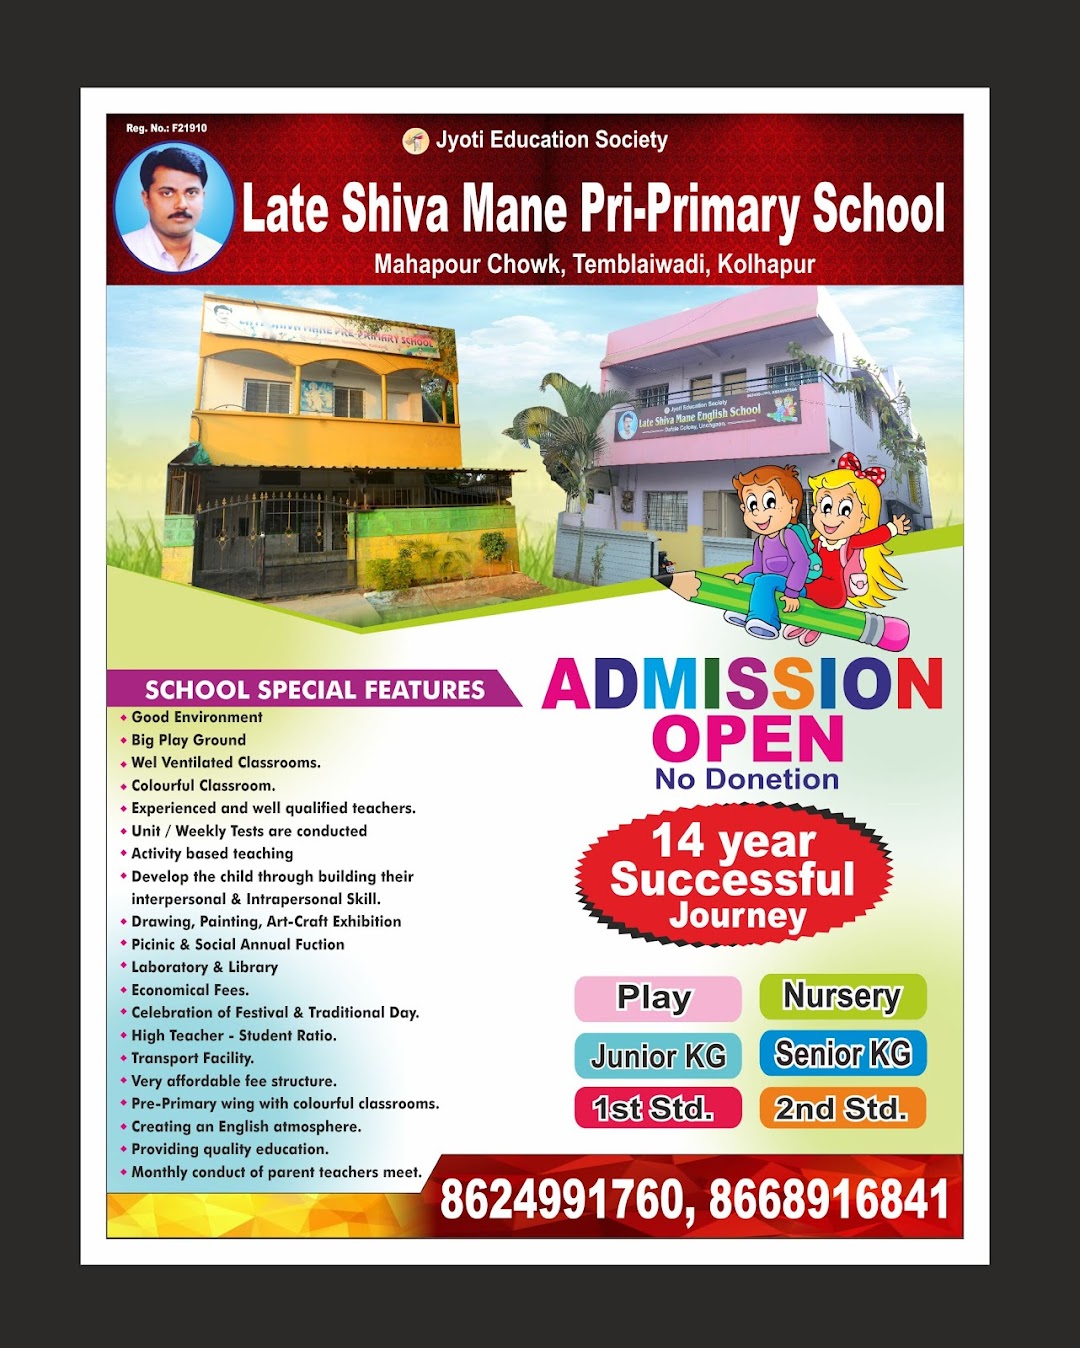 Late Shiva Mane Pre-primary School